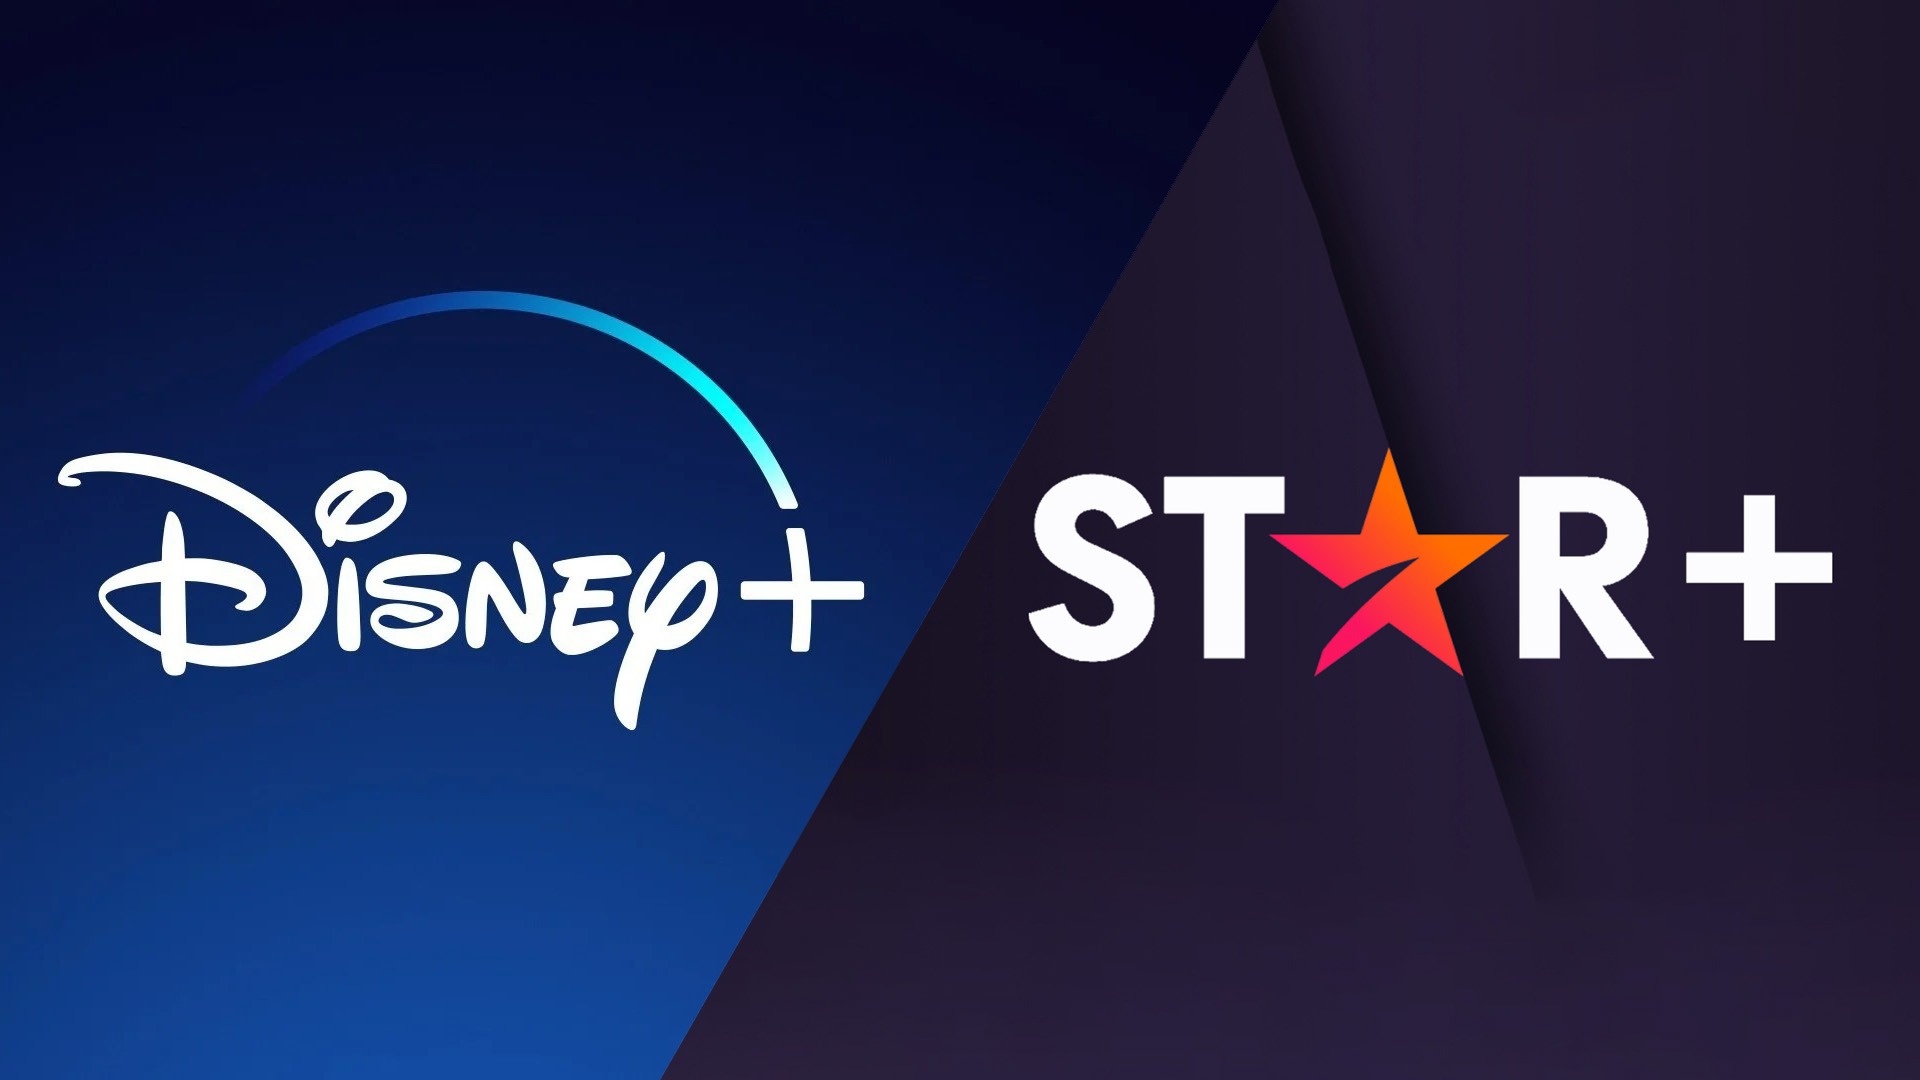 Disney+ aumenta preço da assinatura após fusão com Star+; veja os novos valores